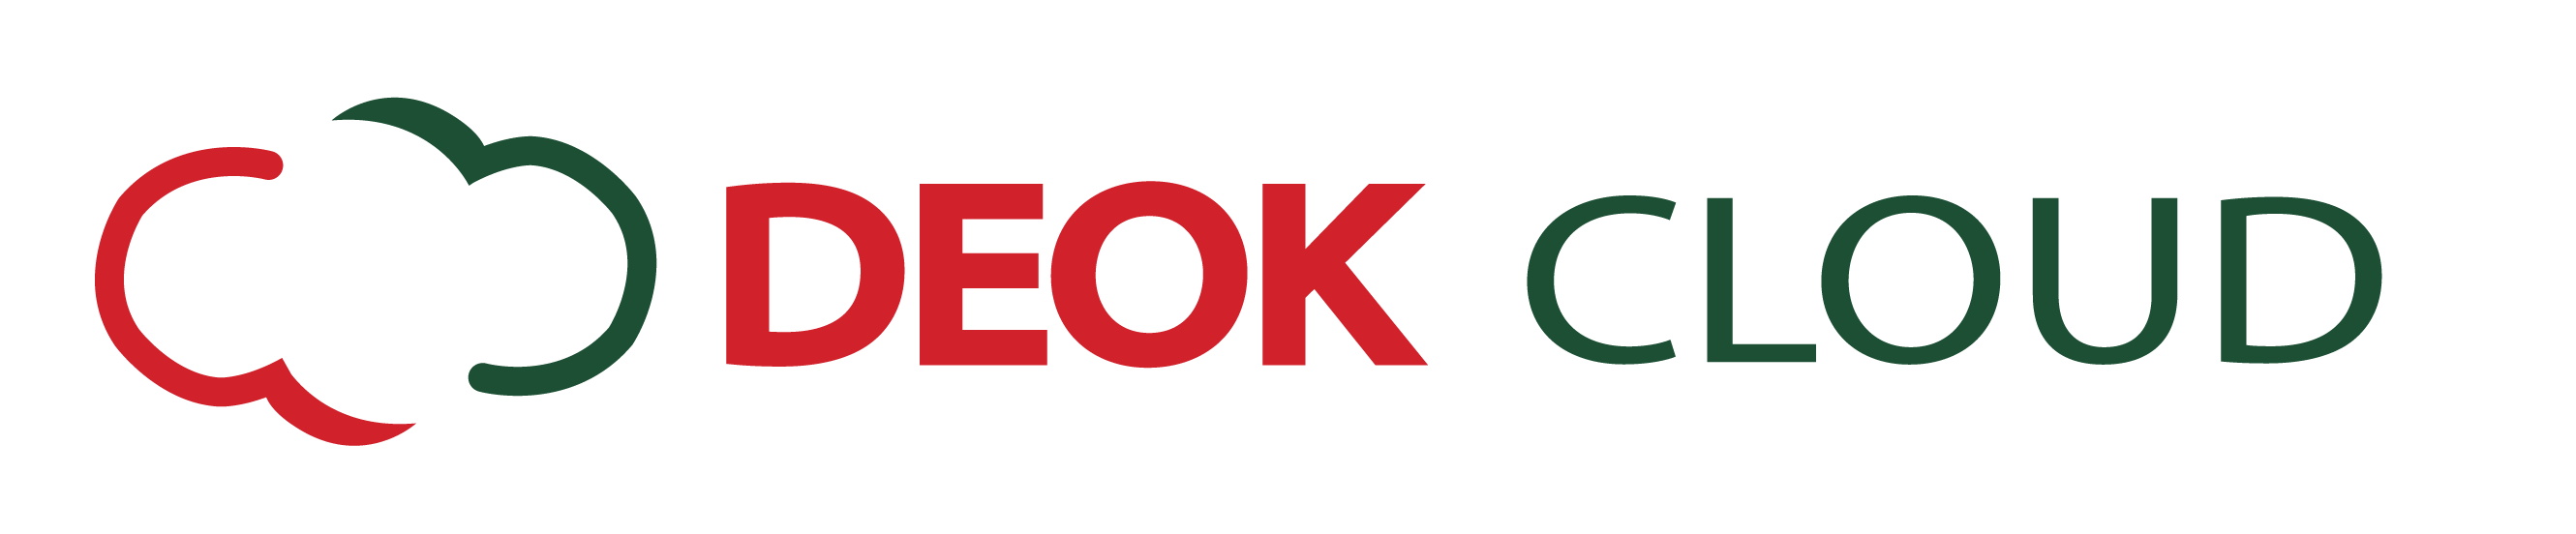 deokcloud logo 01